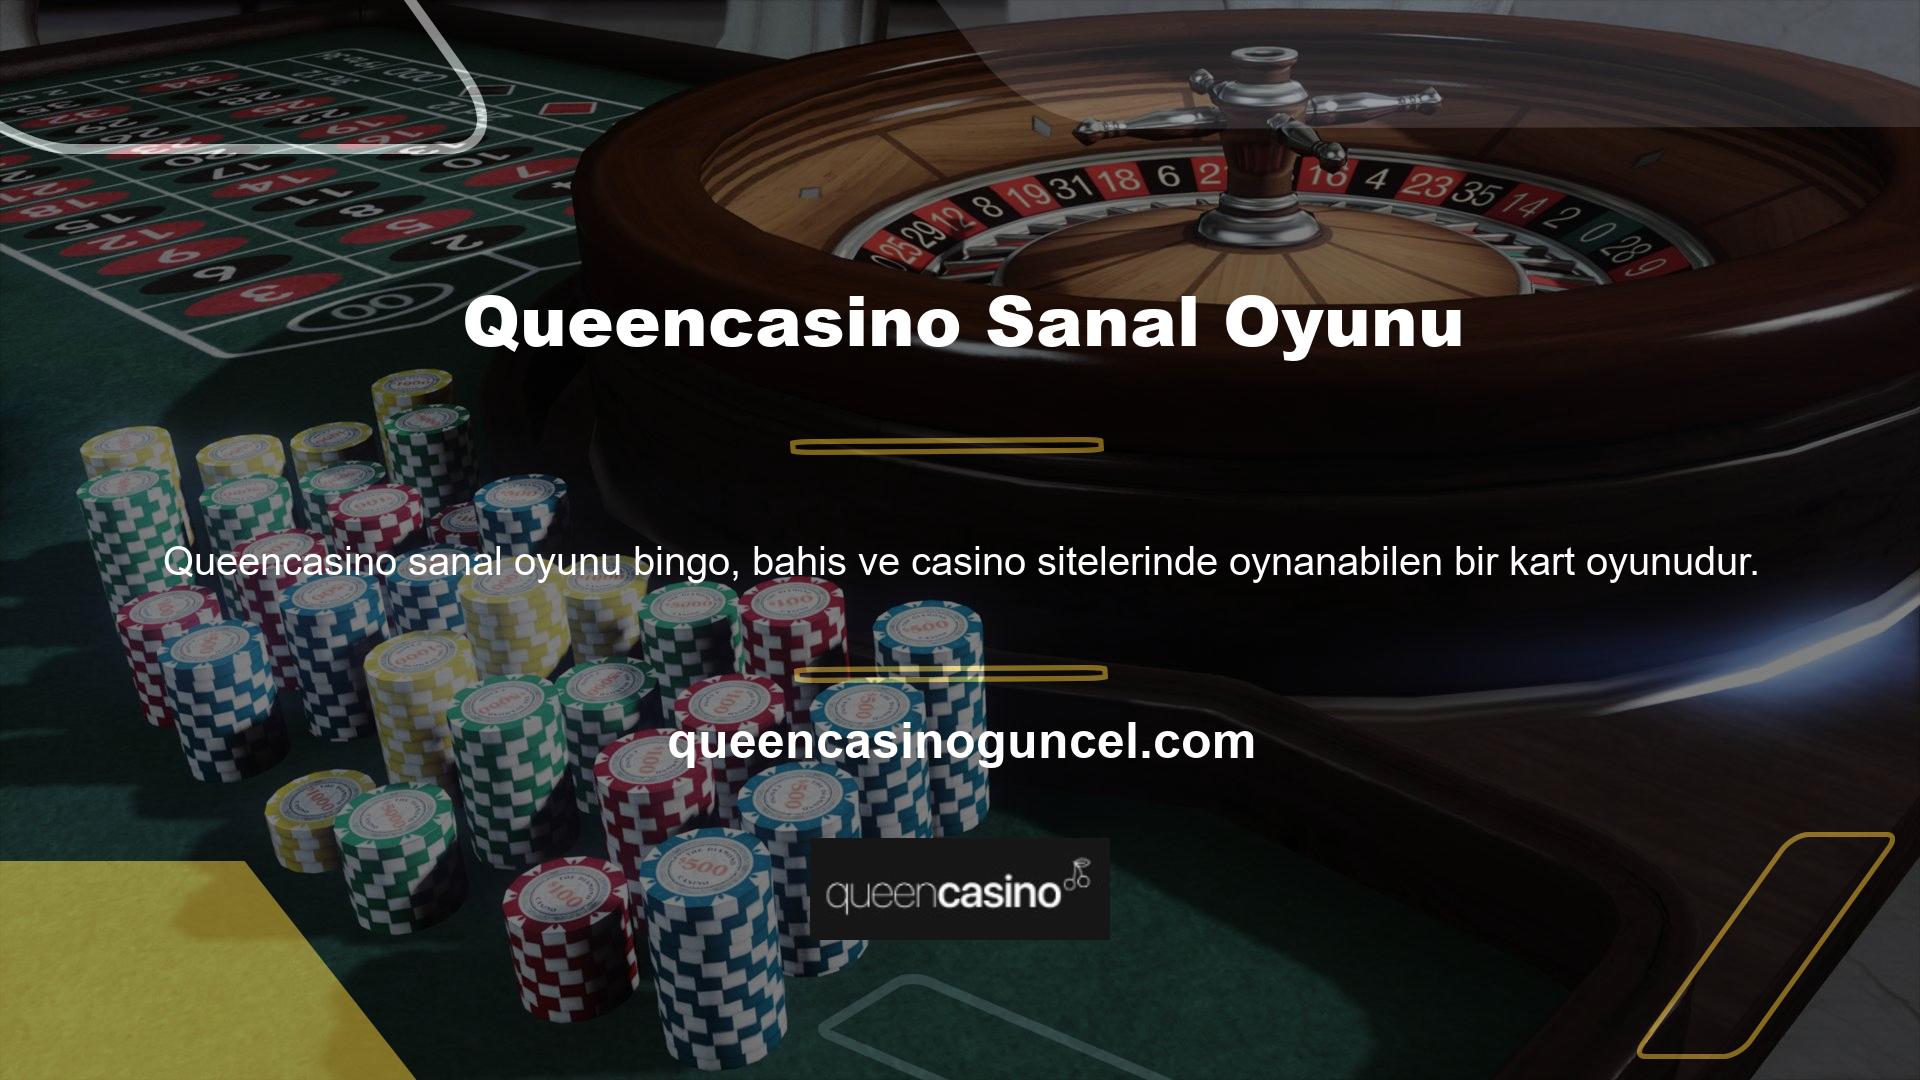 Queencasino sanal oyununda kartlar alınır ve oyunculara kart verilir